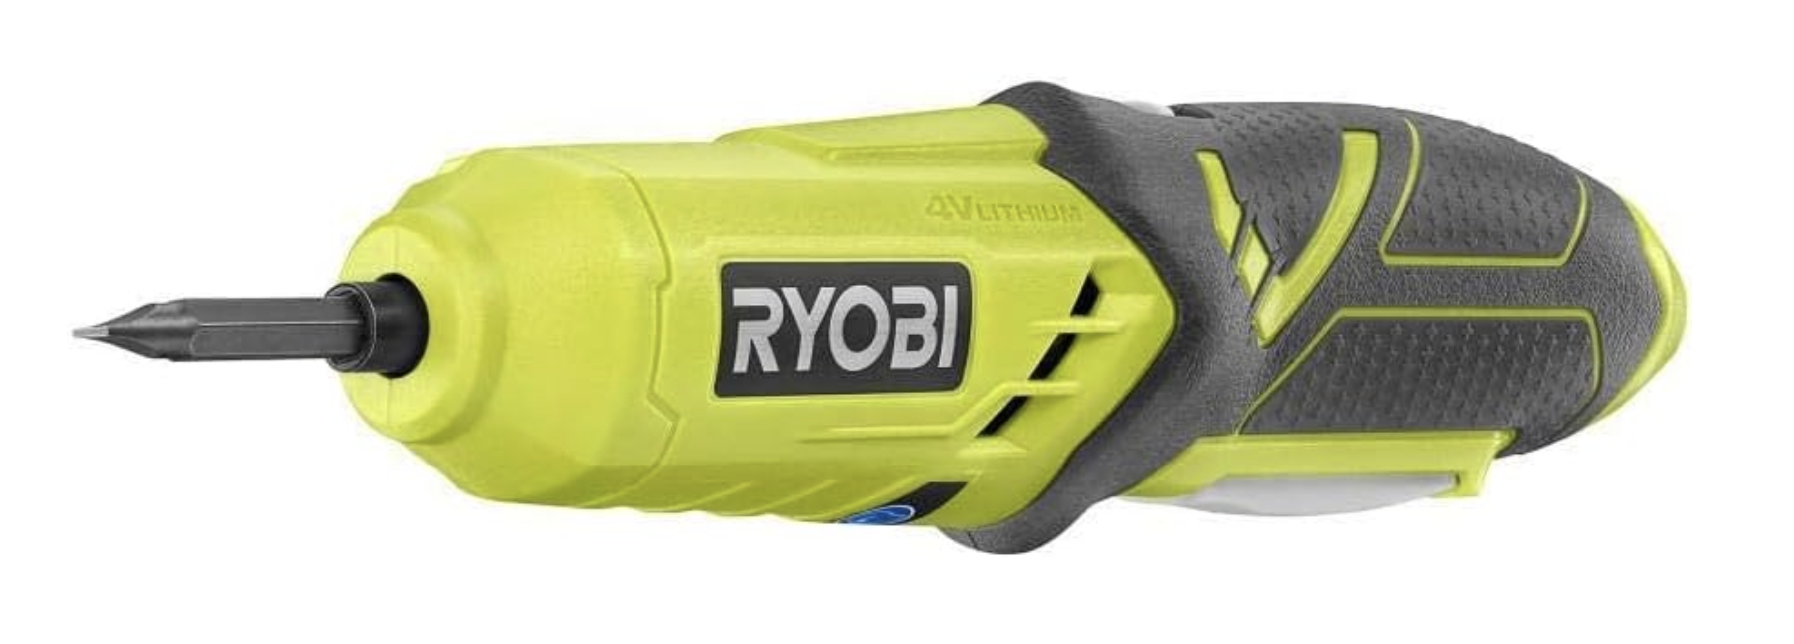 Ryobi electric screwdriver